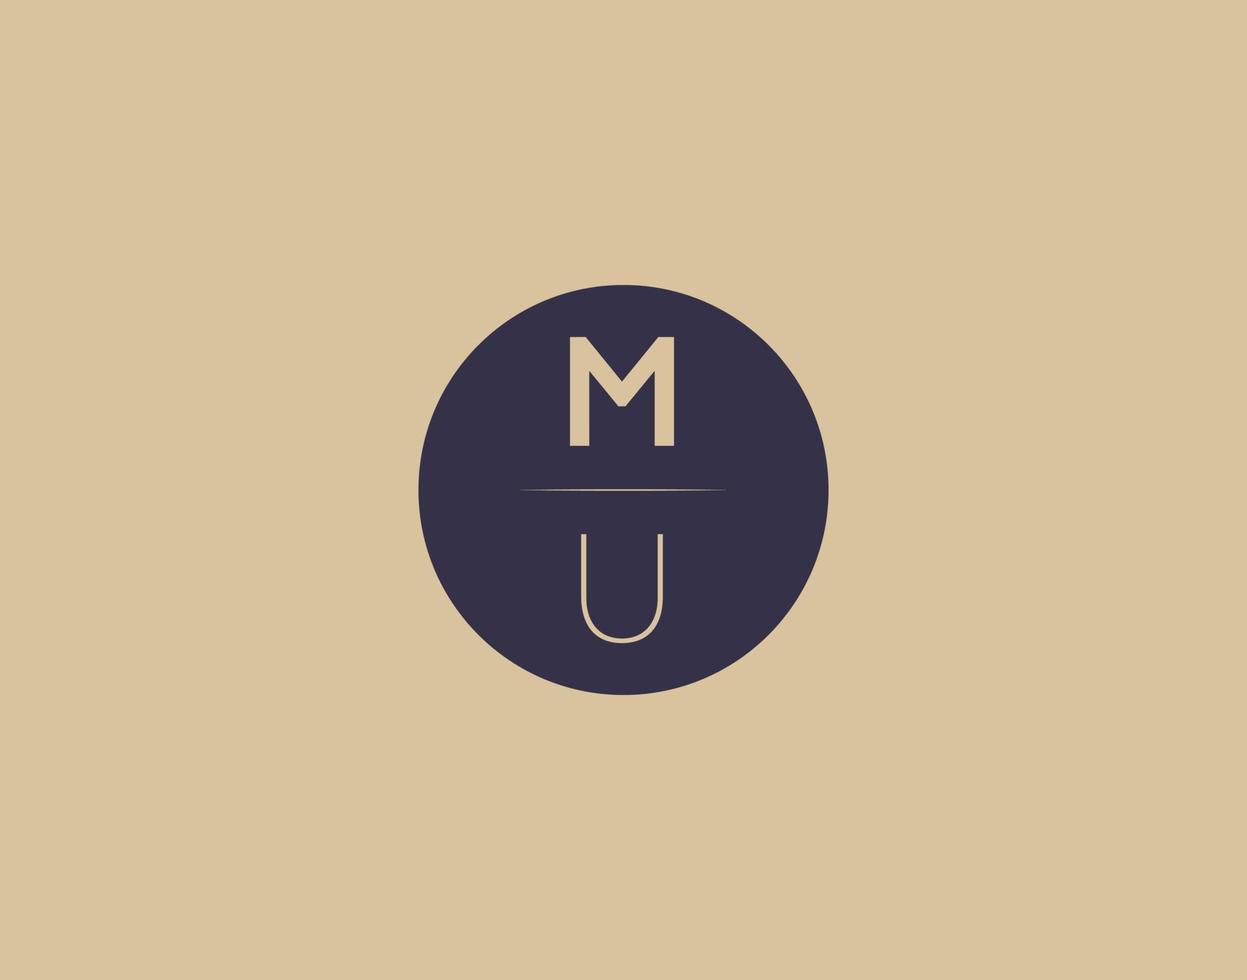 MU letter modern elegant logo design vector images